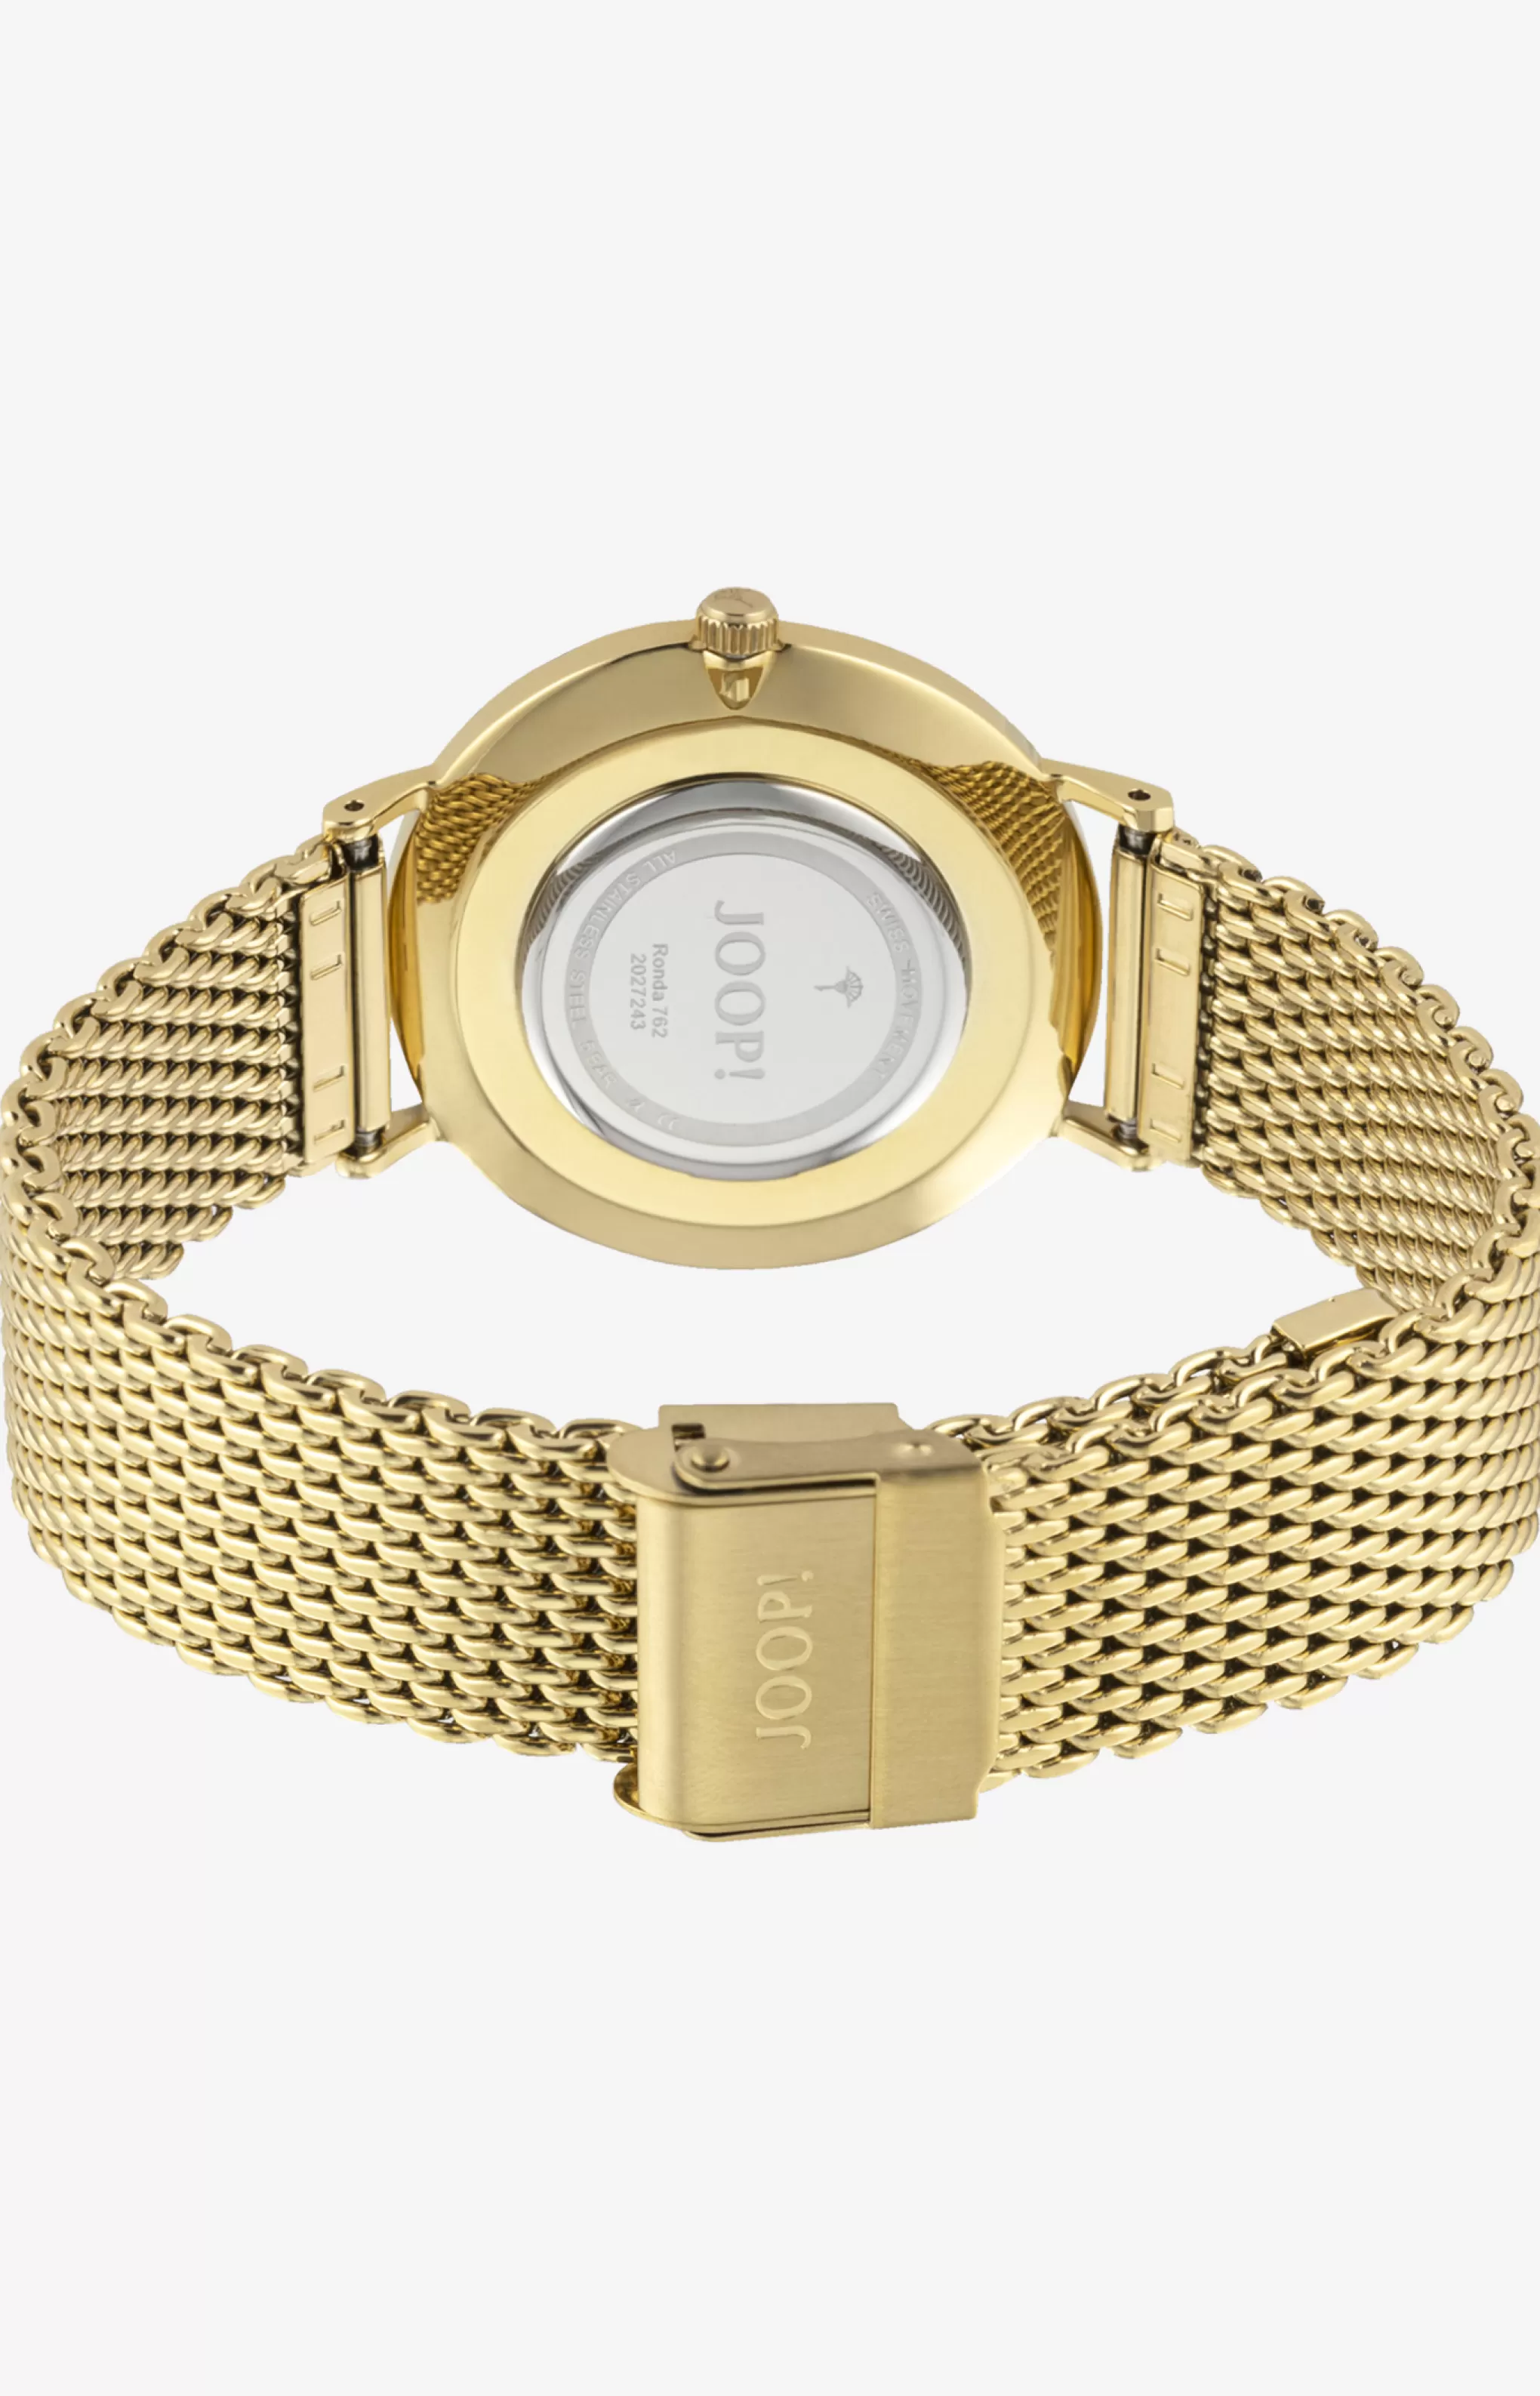 Watches | Jewellery*JOOP Watches | Jewellery Women's watch in